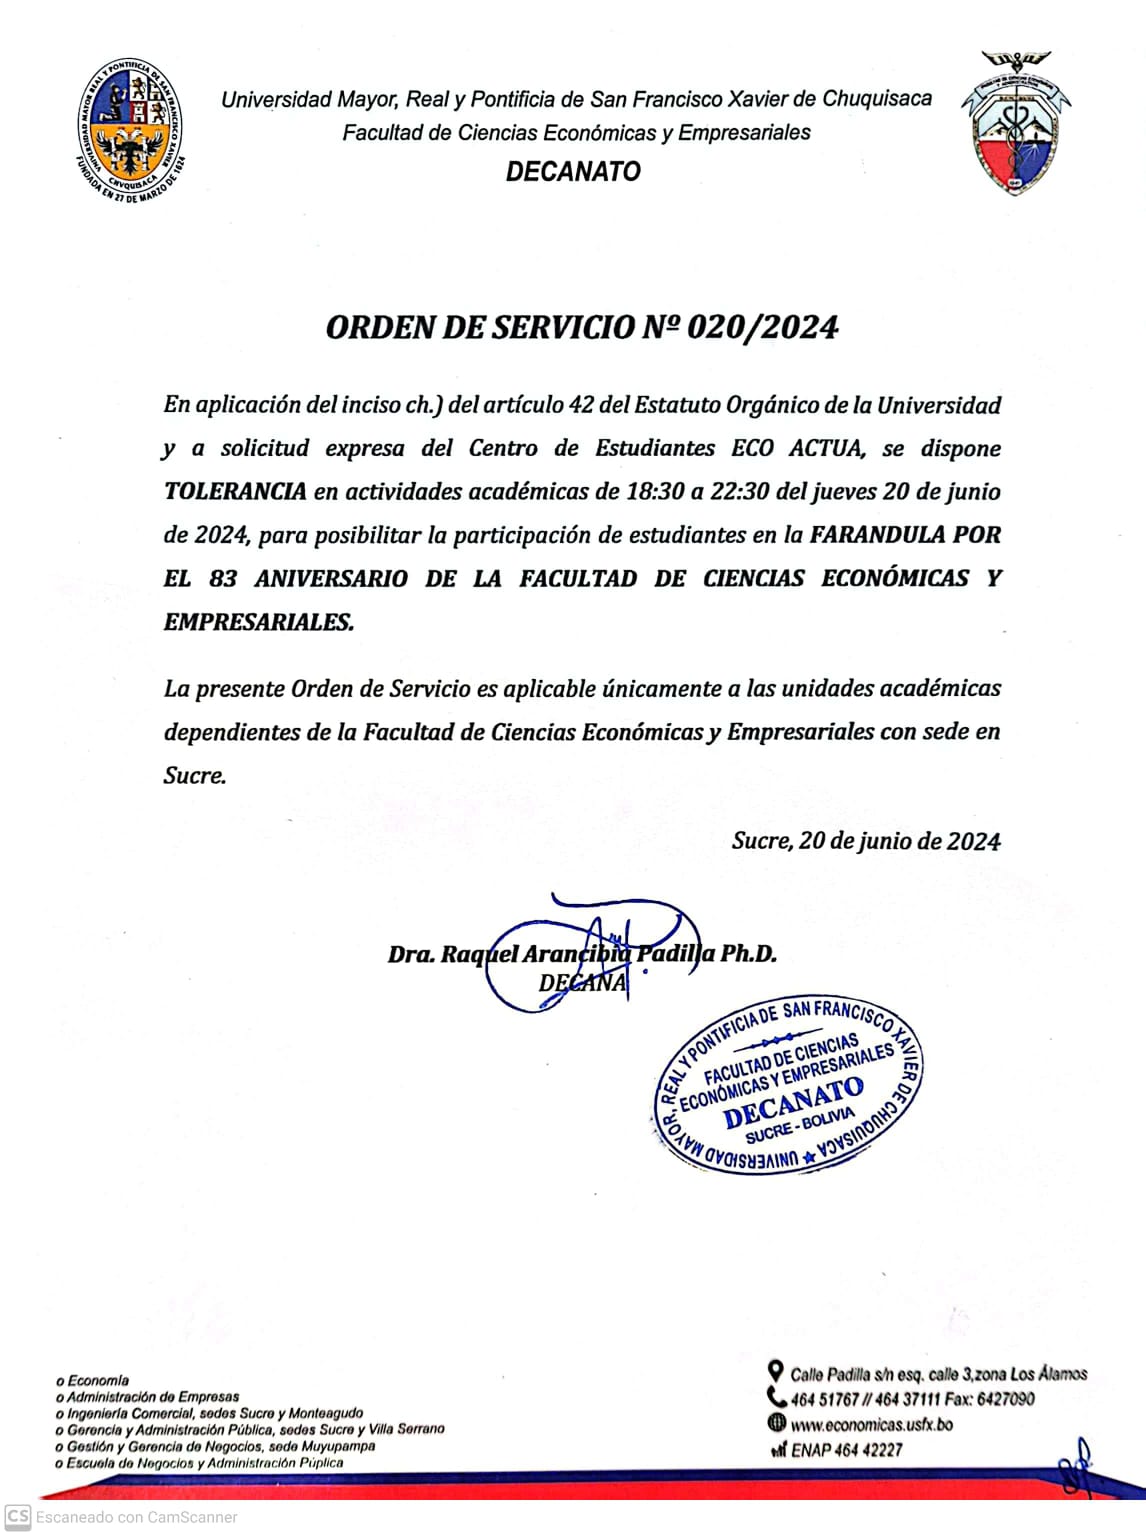 ORDEN DE SERVICIO FCEE Nº 020/2024, TOLERANCIA – ACTIVIDADES ACADÉMICAS, 20 DE JUNIO DE 2024.